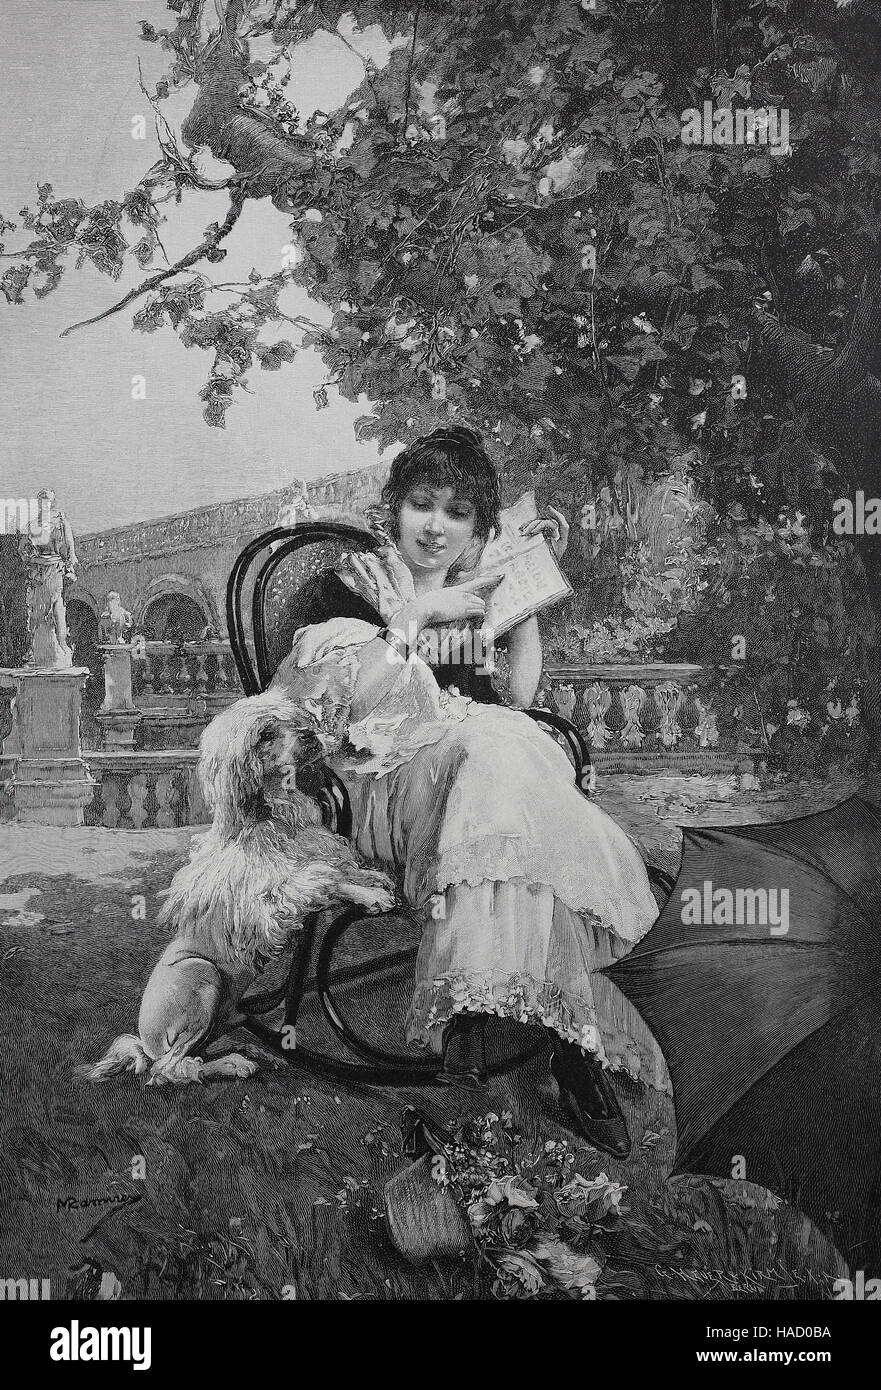 Mujer joven sentado en una silla tratando de enseñar a su perro la lectura, Ilustración publicada en 1880 Foto de stock